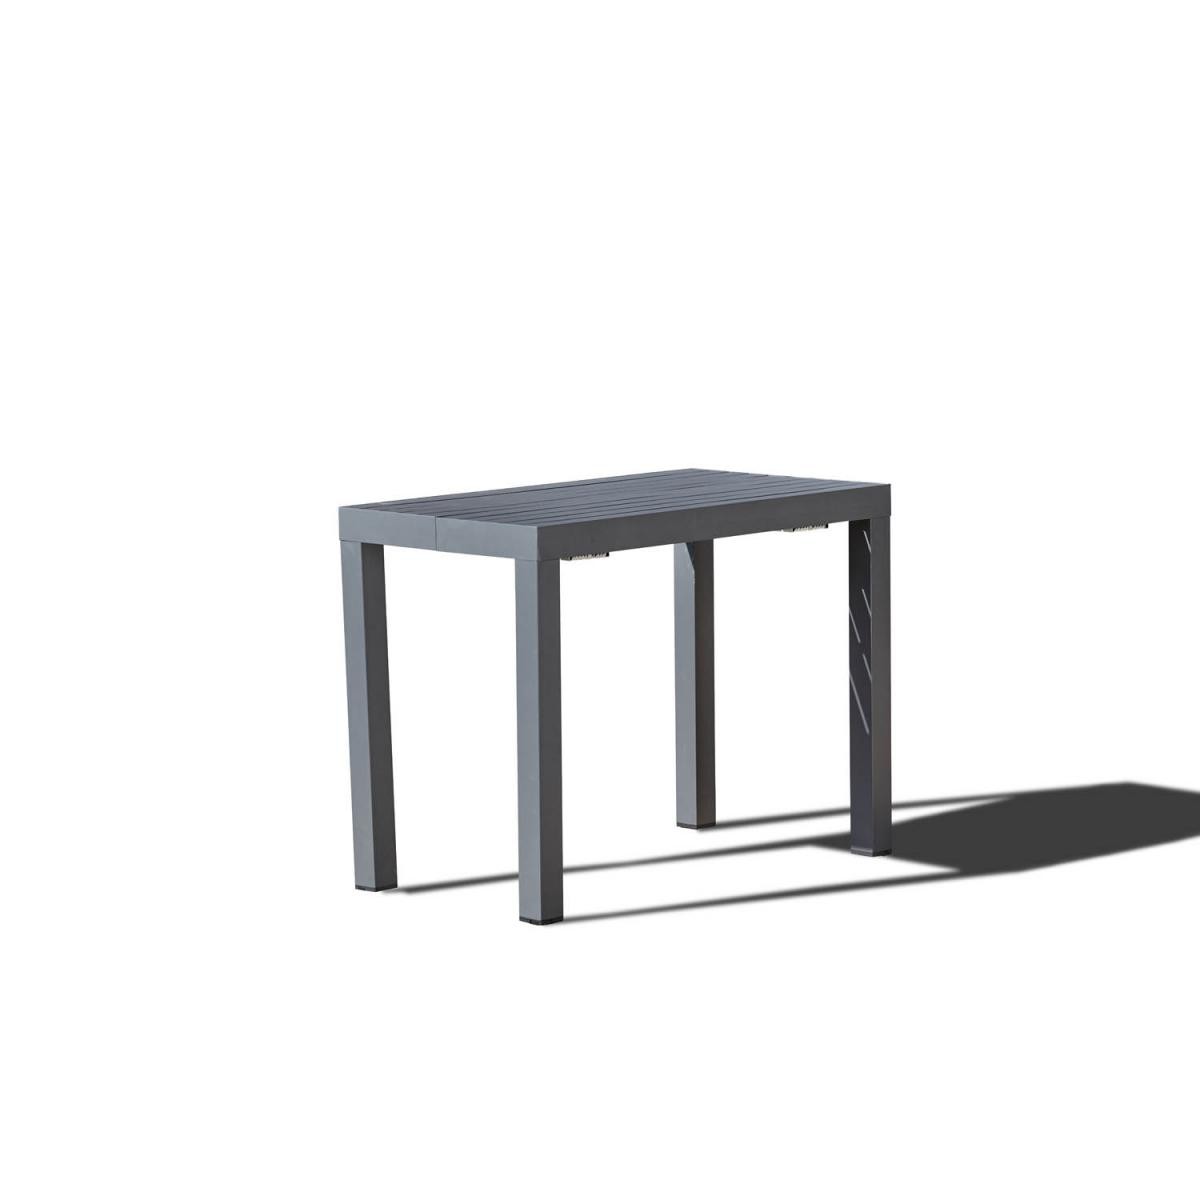 Concept Usine - Olhao - Console extensible aluminium - 2/6 pl - Ensembles tables et chaises